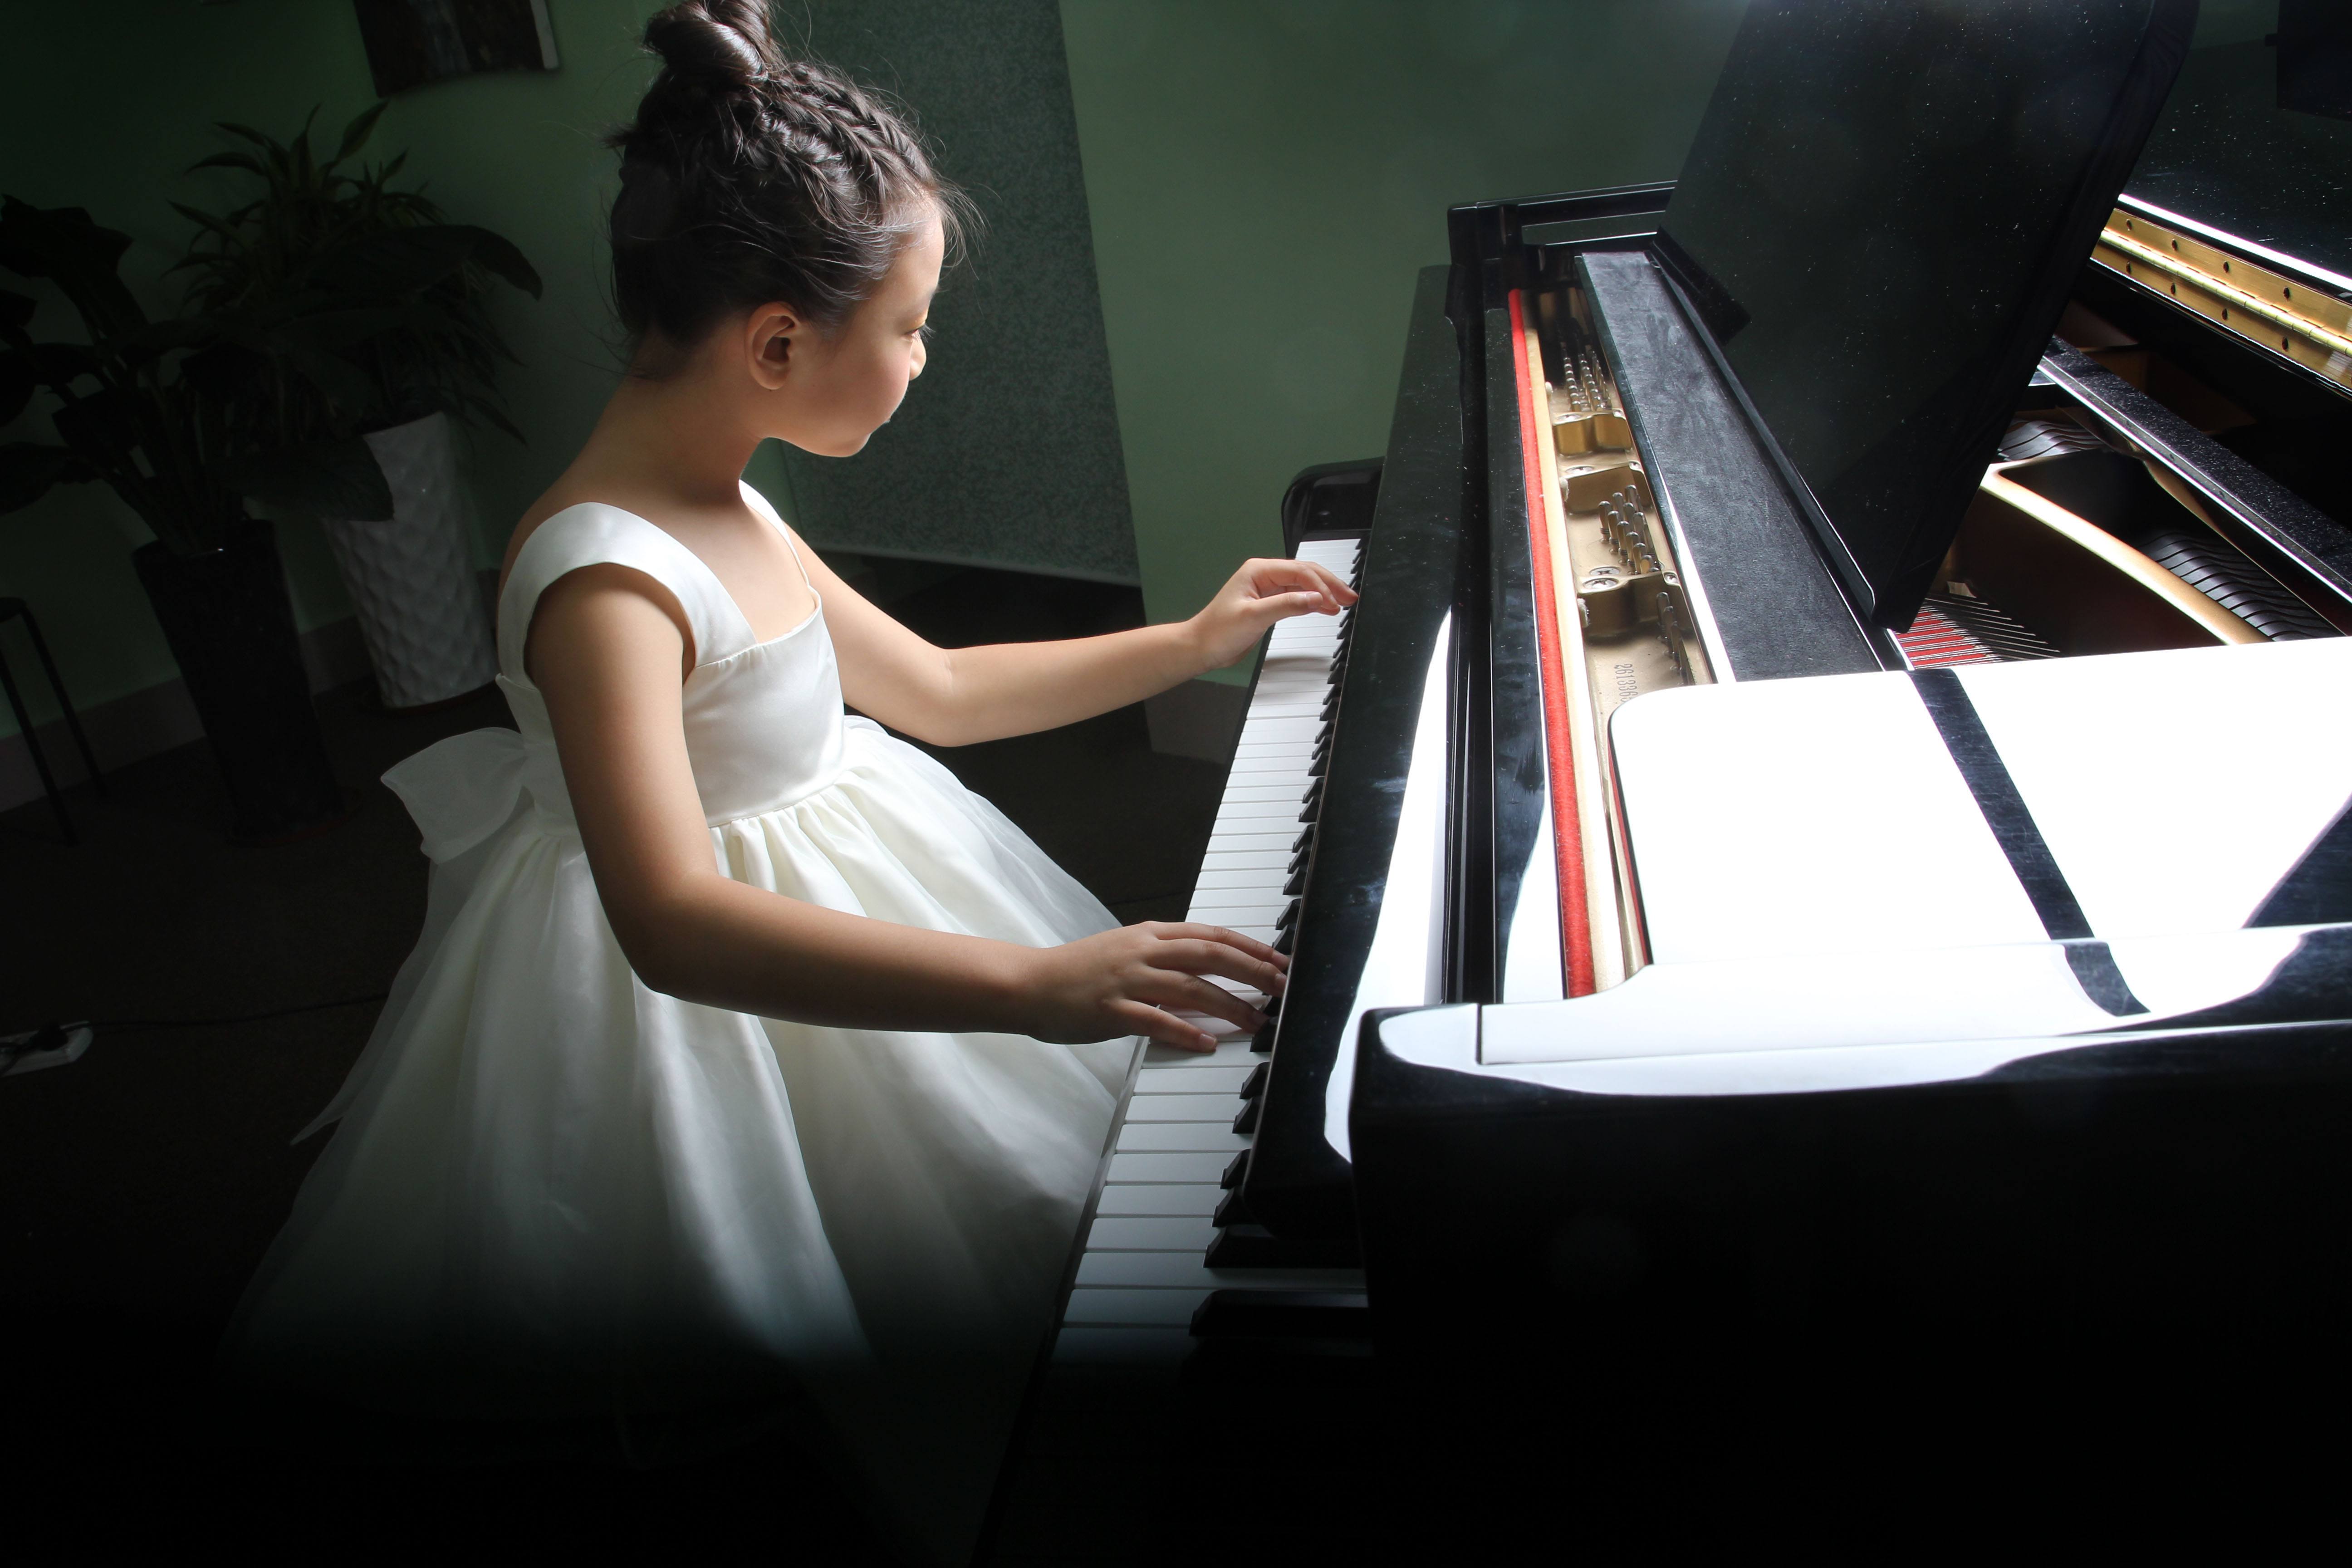 在,练习,钢琴,的,过程中,应该,怎样,看谱,和,背谱,在, . 在练习钢琴的过程中应该怎样看谱和背谱？